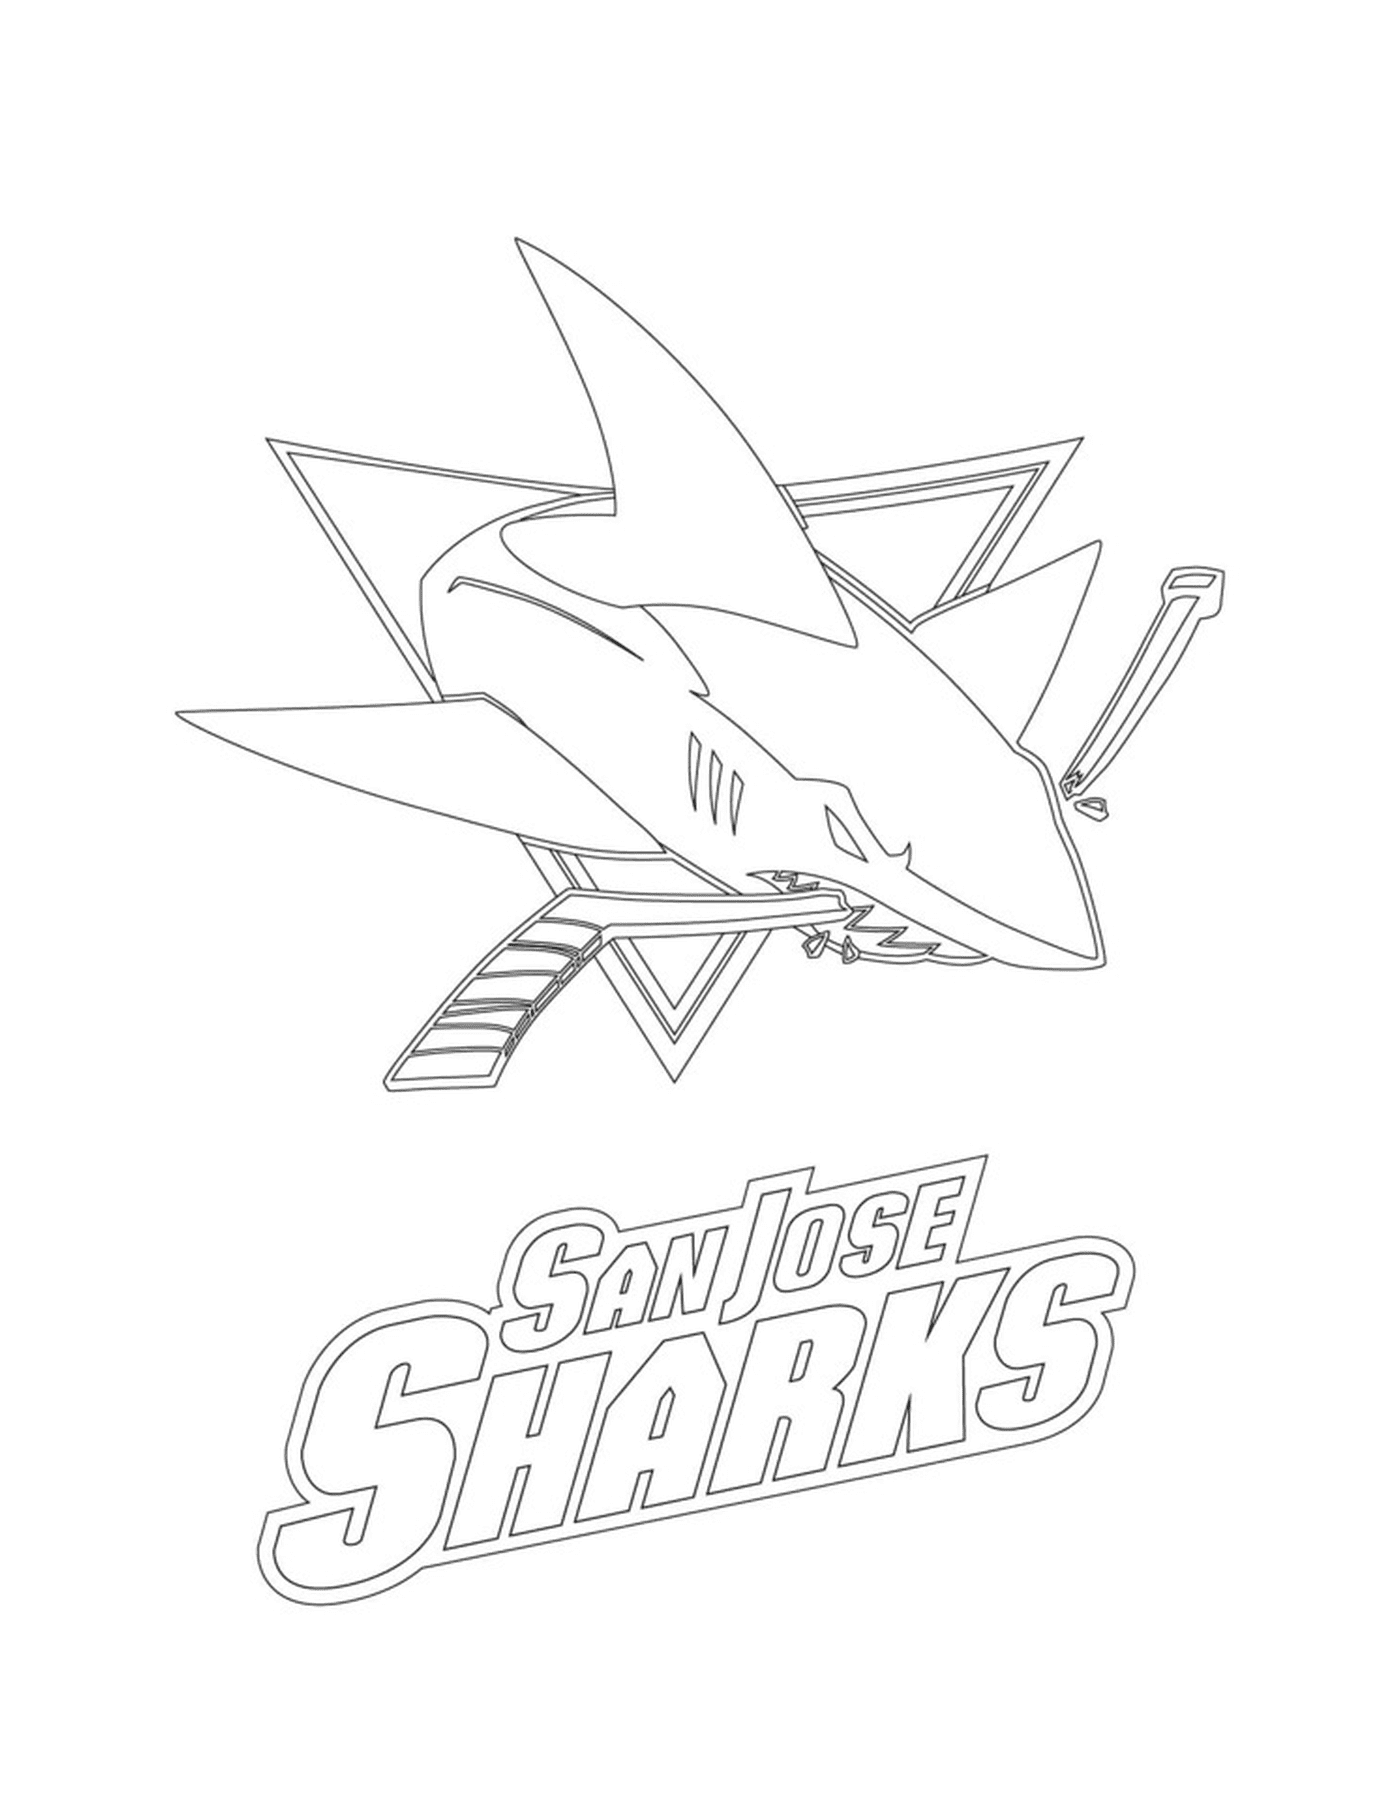  Logo of the San Jose Sharks 